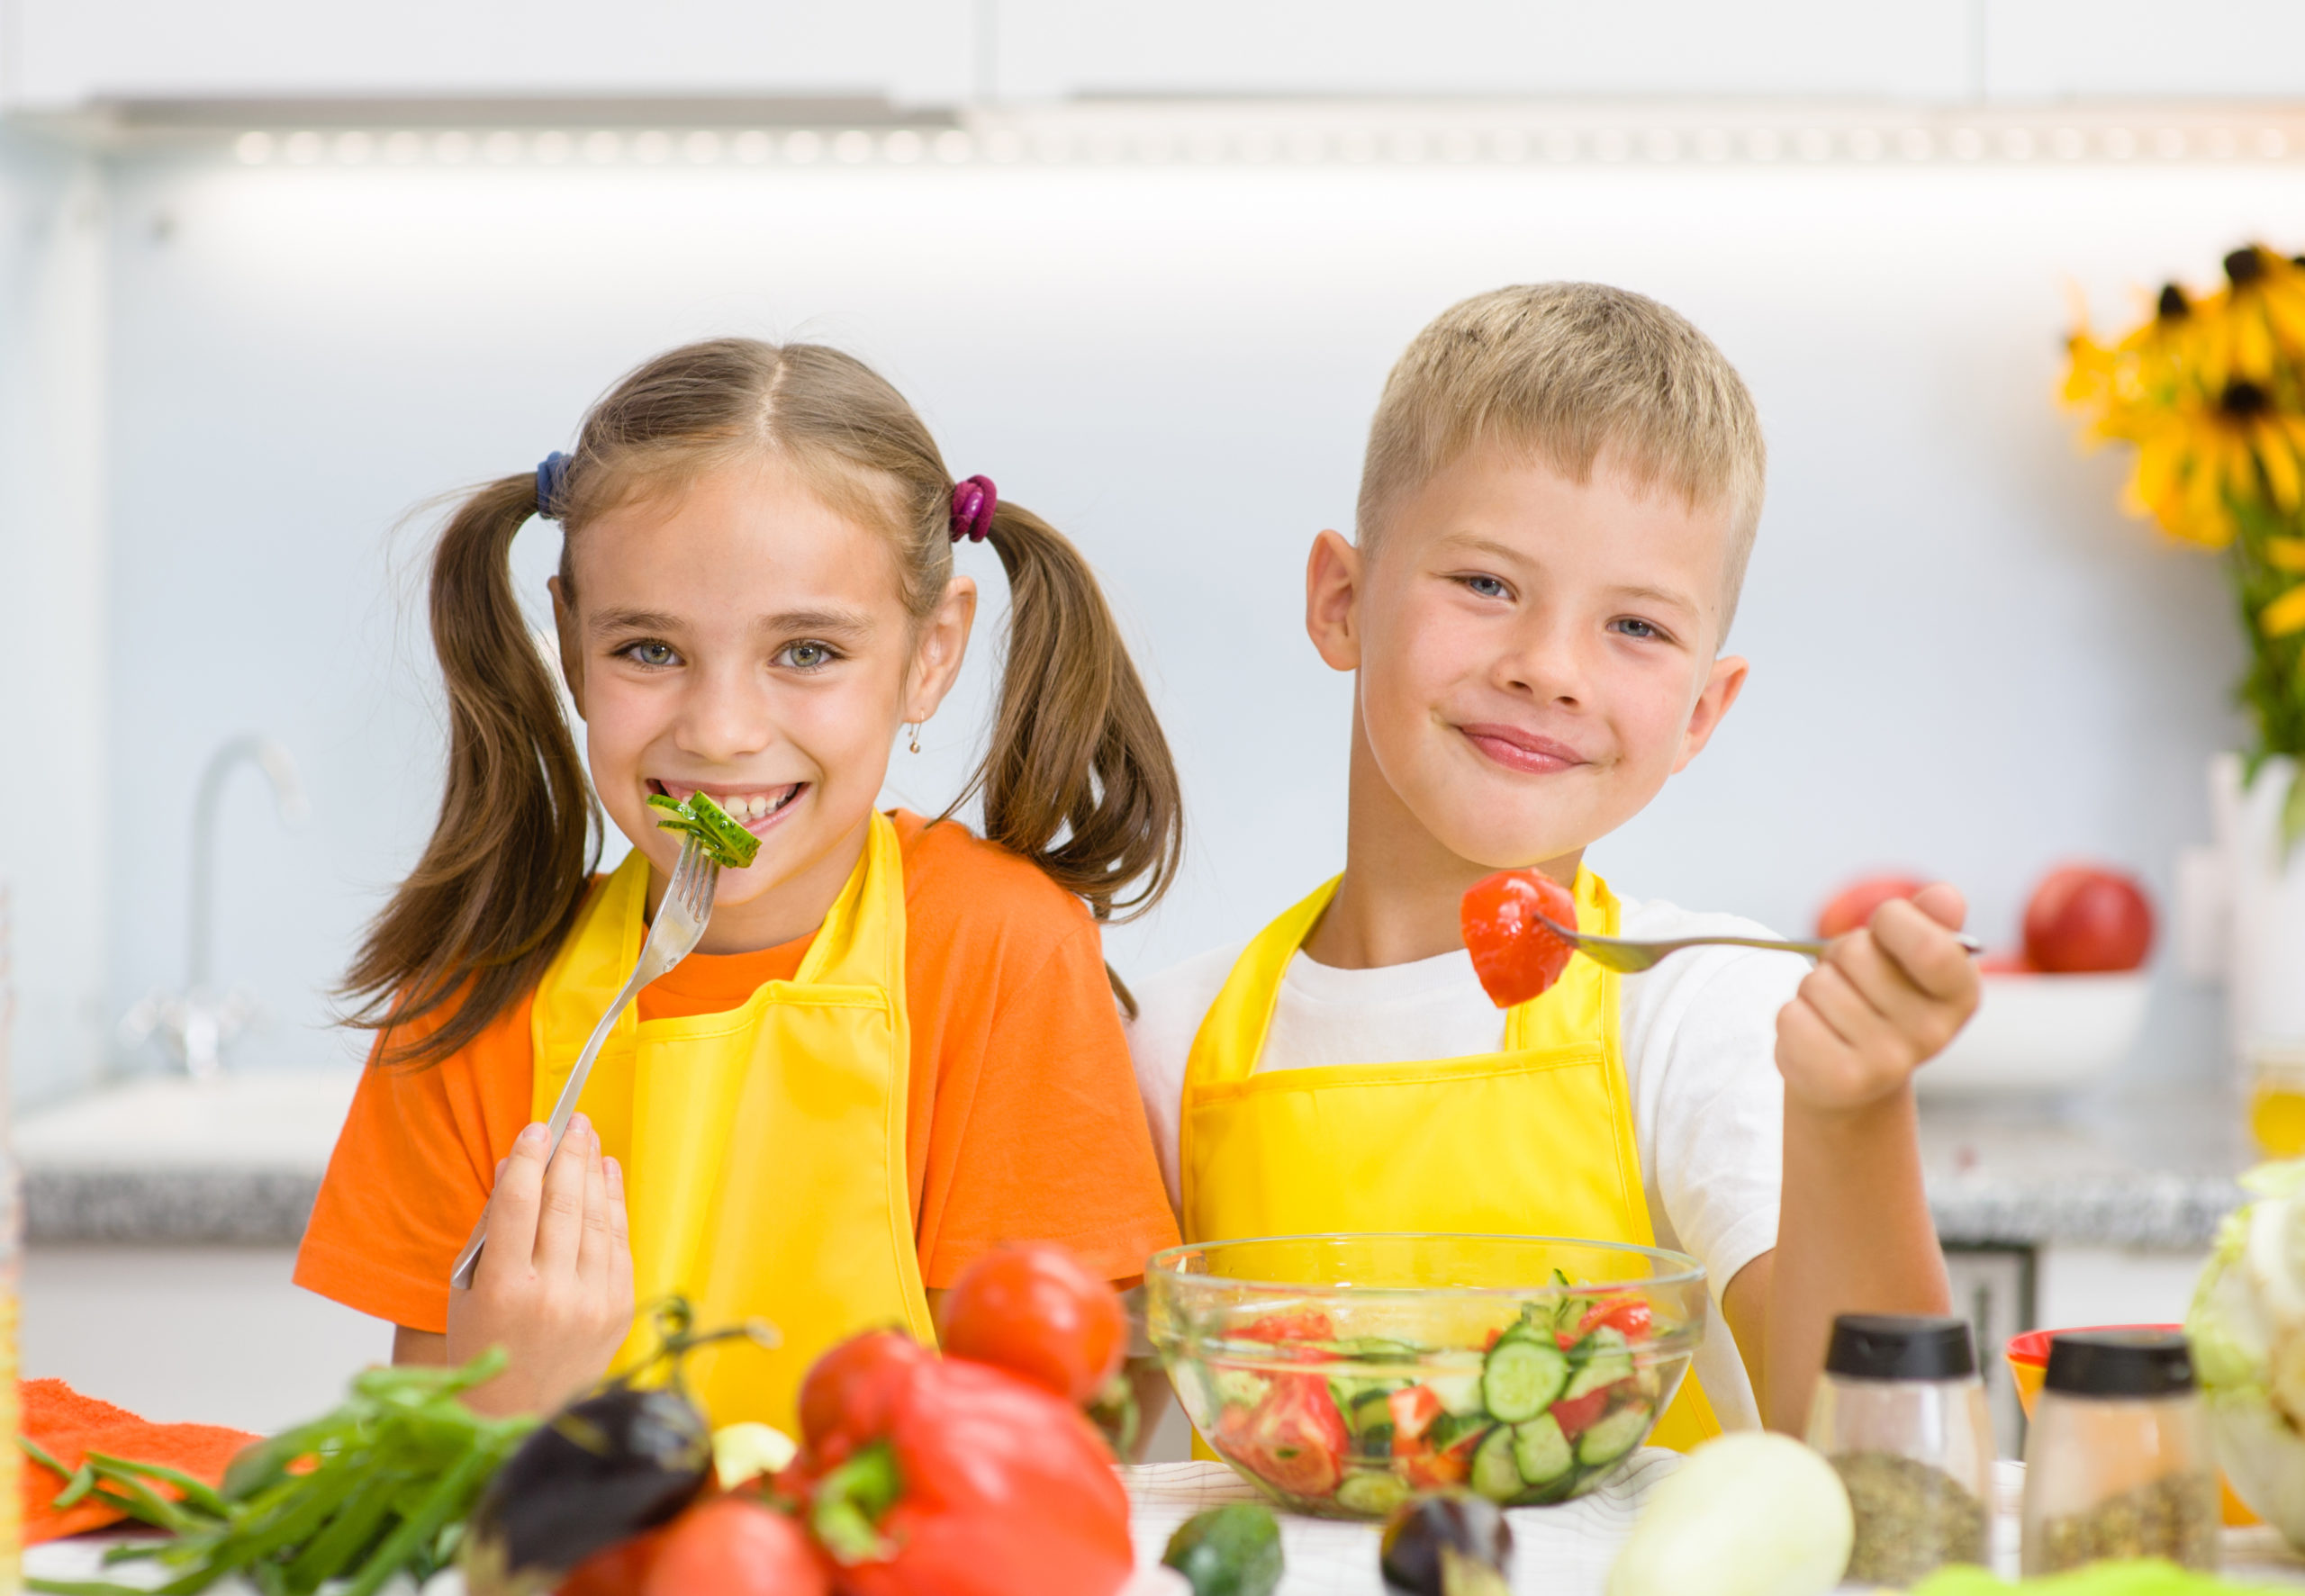 Smiling kids eating fruits